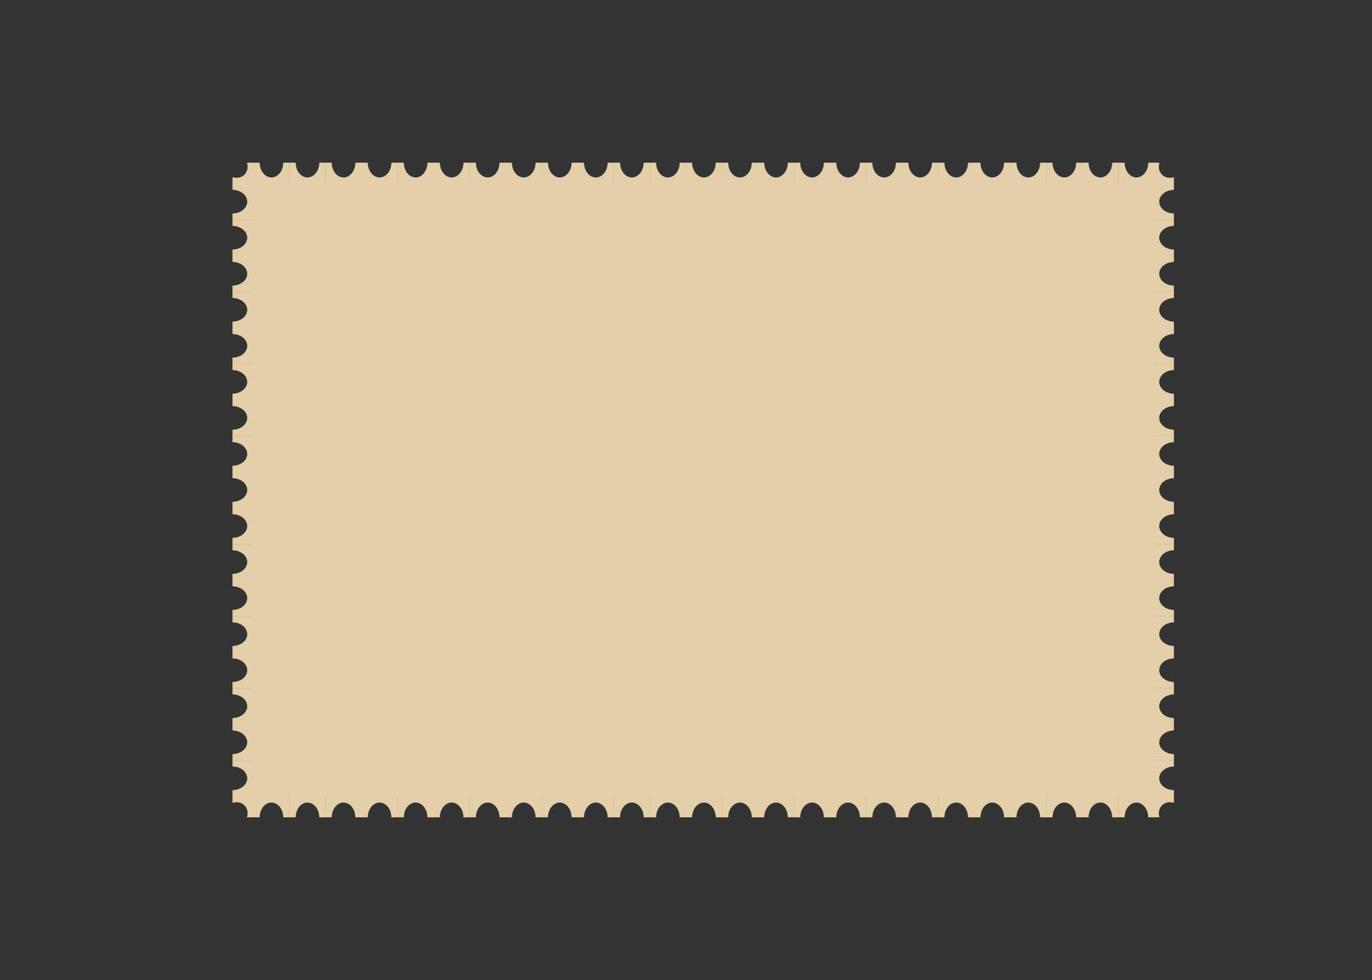 cadre de timbre-poste. modèle de bordure vide pour cartes postales et lettres. rectangle vierge et timbre-poste carré avec bord perforé. illustration vectorielle isolée sur fond noir vecteur